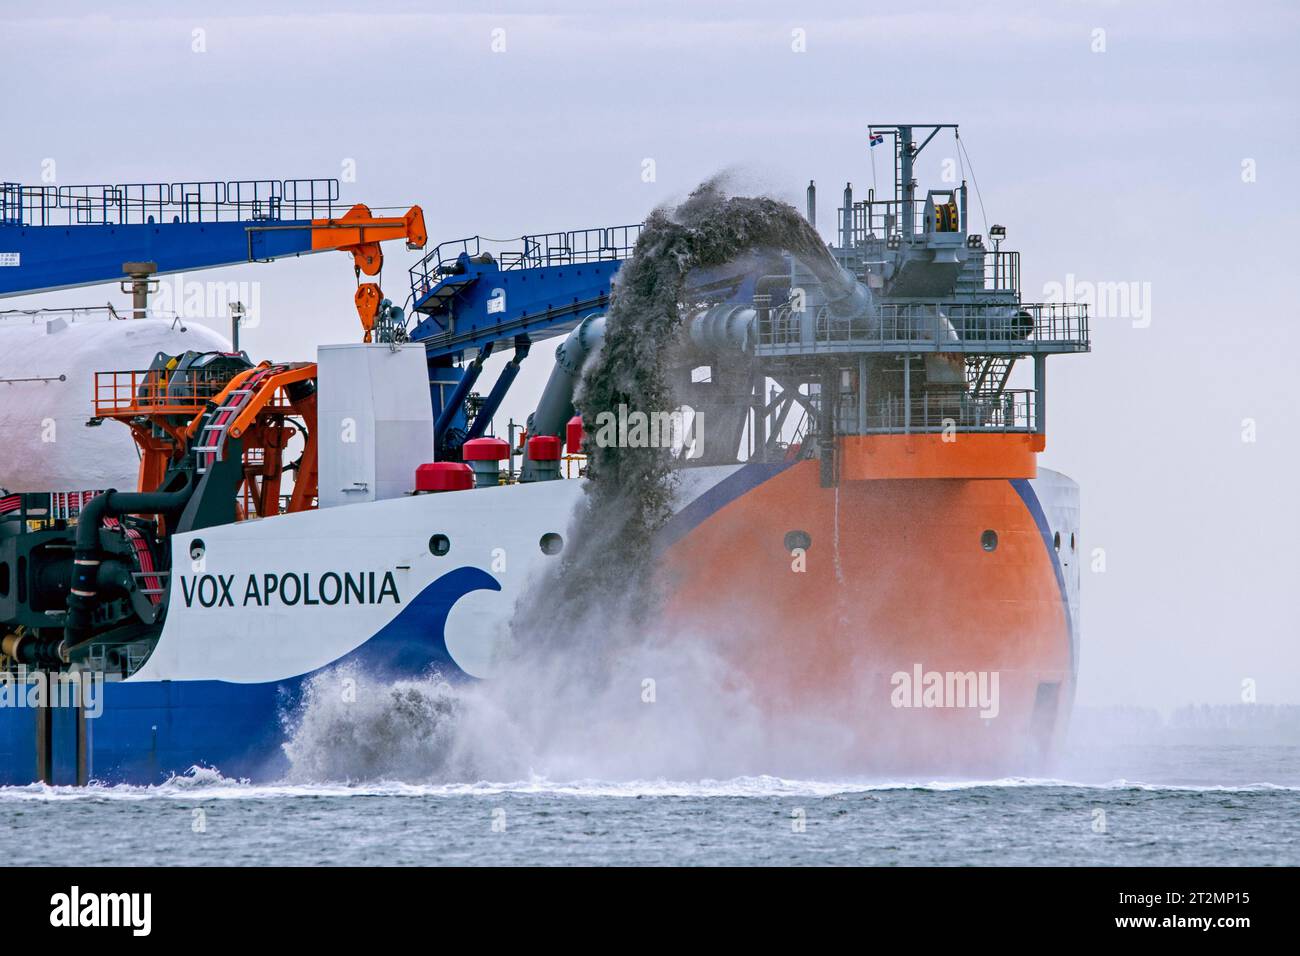 Dragueuse à trémie aspirante traînante Vox Apolonia de Van Oord, société néerlandaise de sous-traitance maritime spécialisée dans le dragage, Rainbench le long de la côte zélandaise Banque D'Images